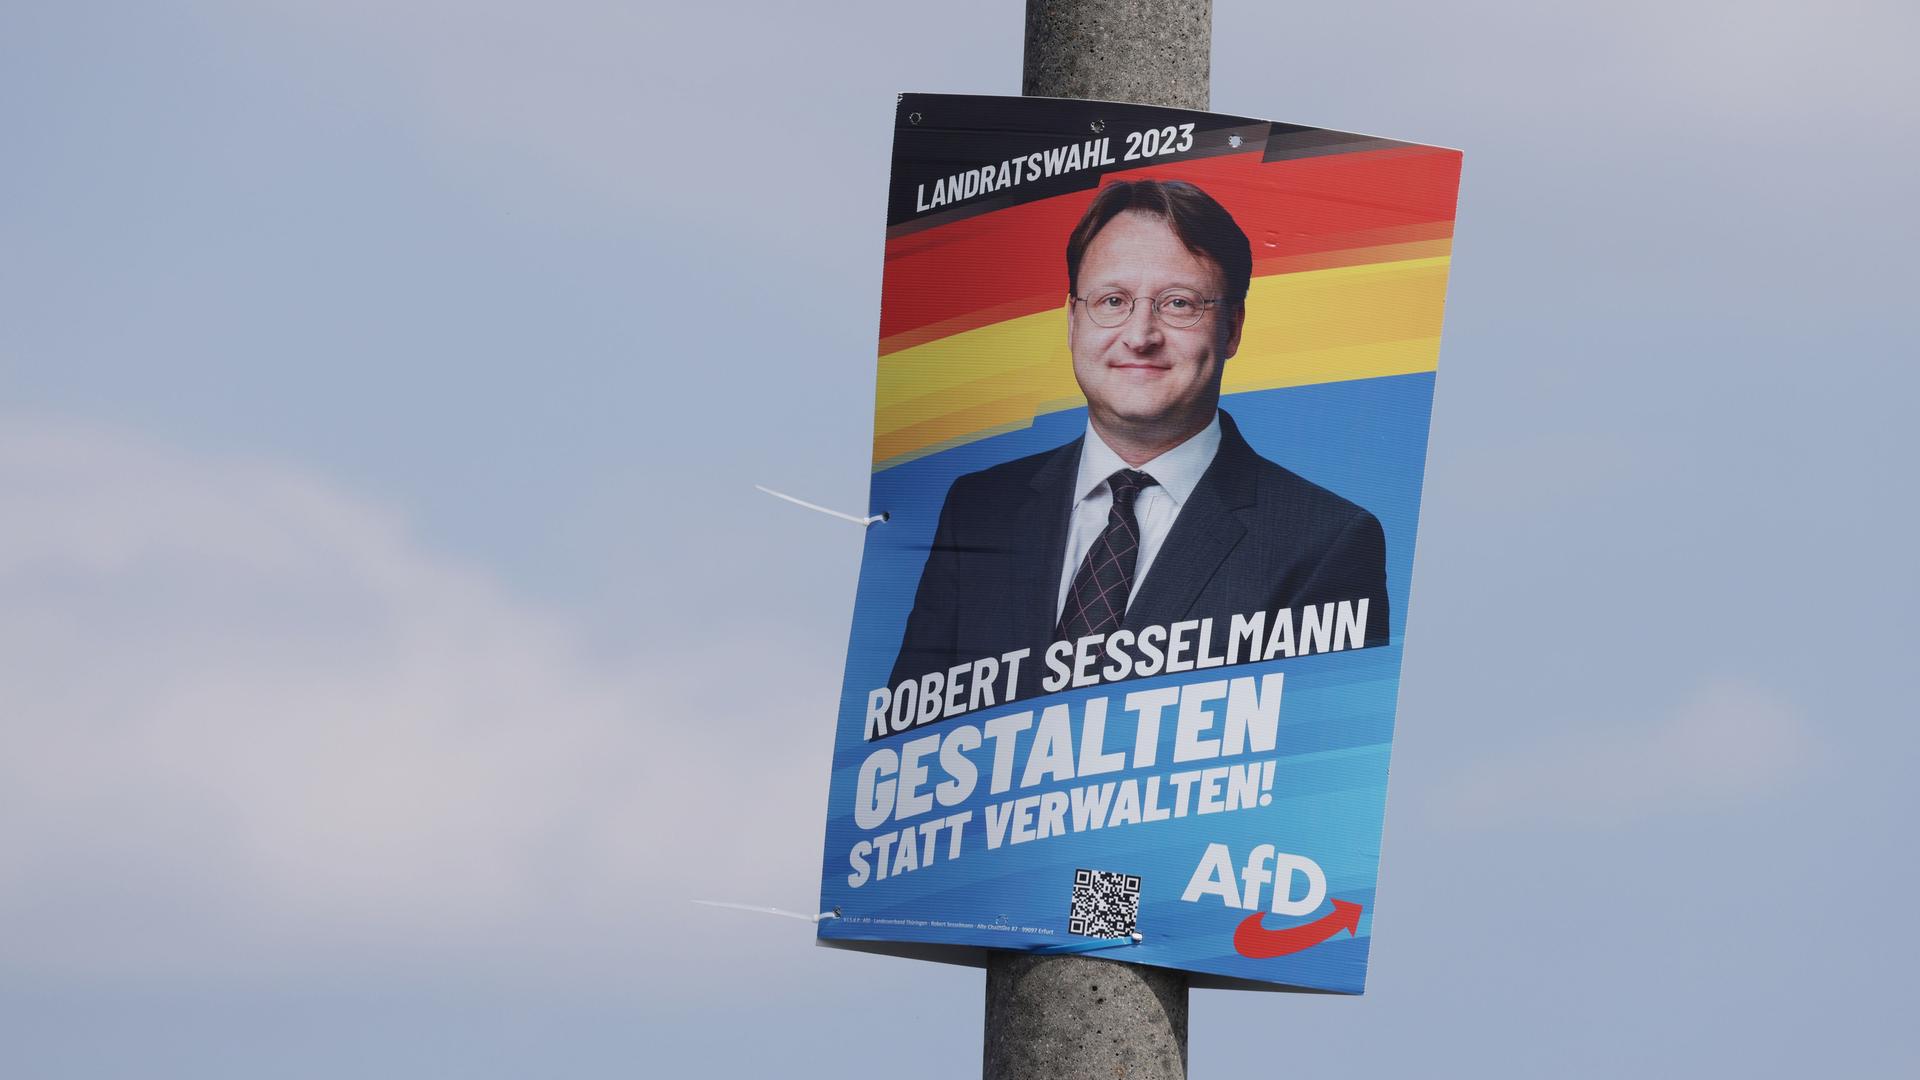 Ein Wahlkampfplakat für Robert Sesselmann, Kandidat der "Alternative für Deutschland" (AfD) in Sonneberg, Thüringen, 26.06.2023.